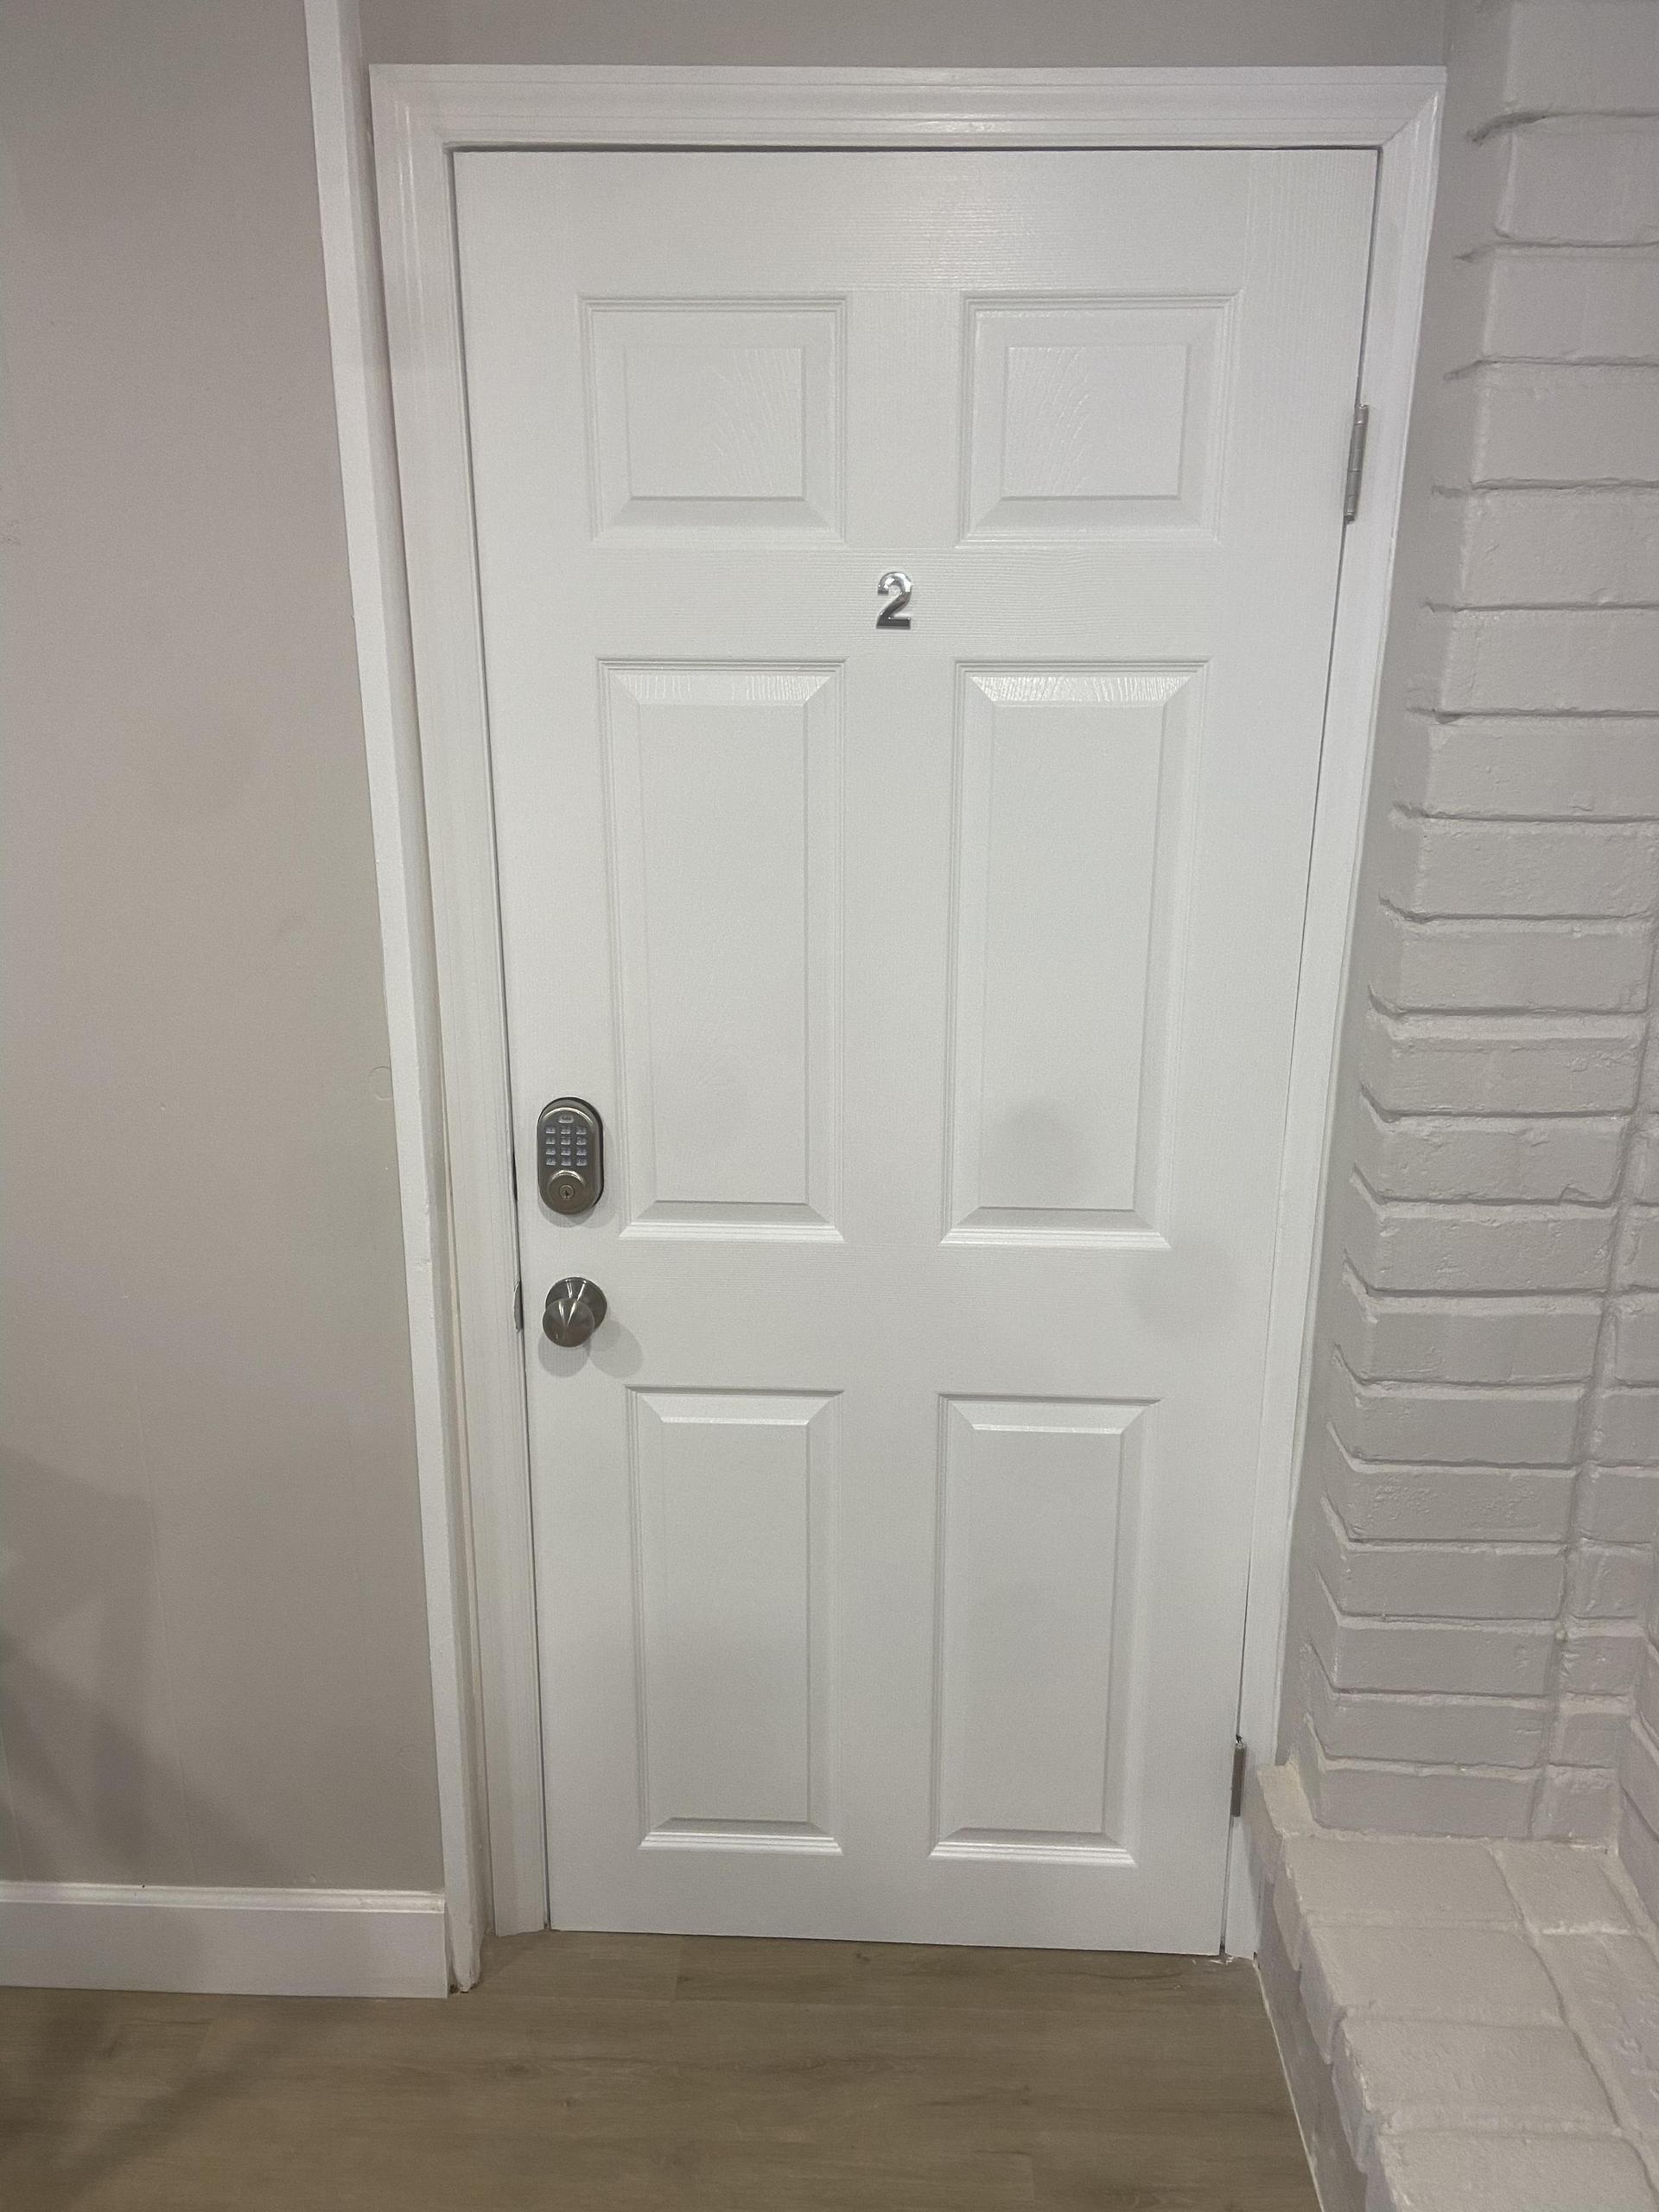 Room 2 - Entry Door